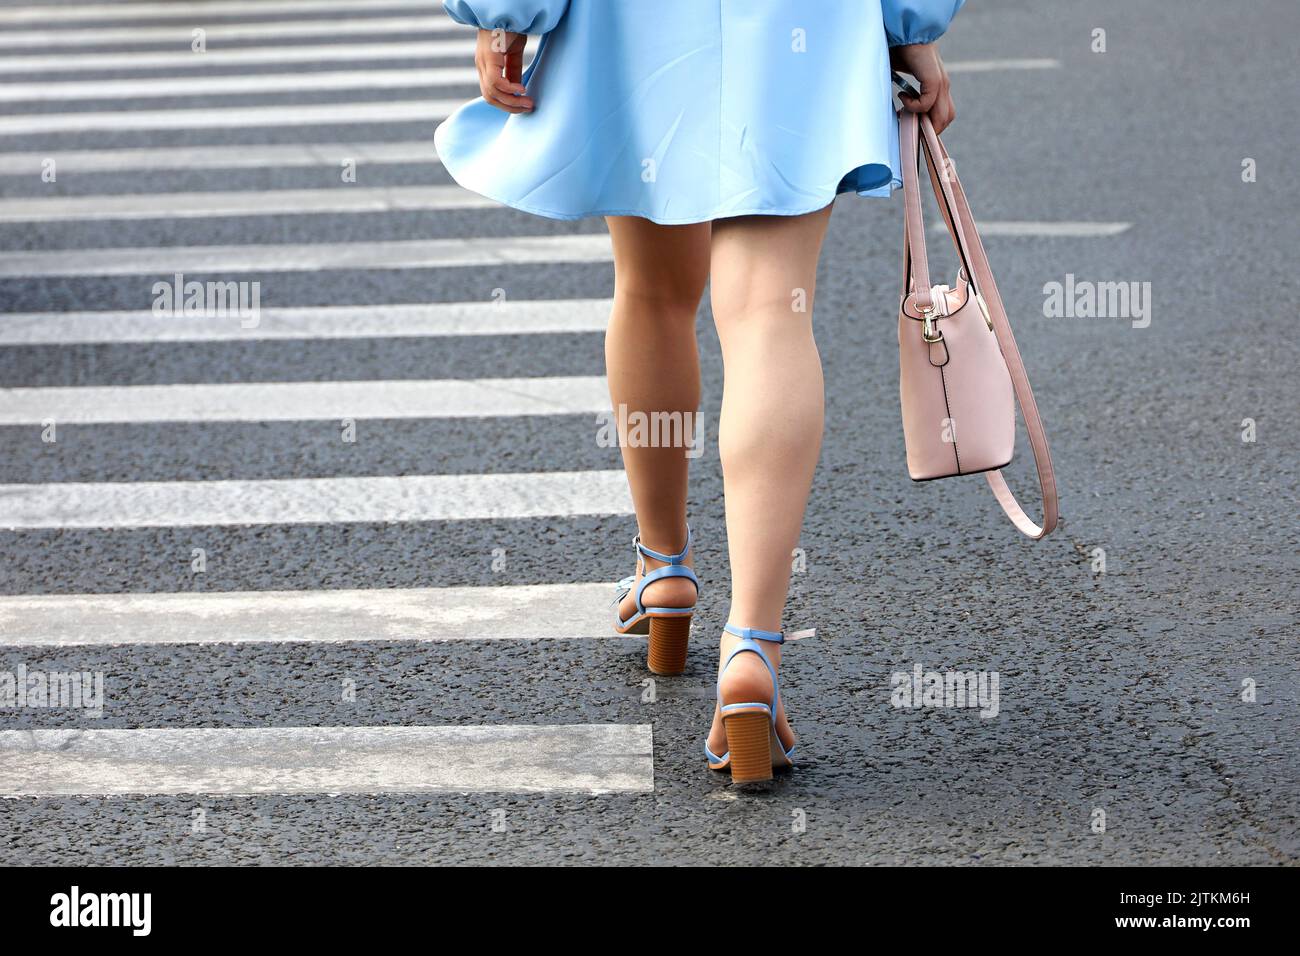 Chica con vestido corto azul y zapatos en tacones altos cruzando con bolso rosa la calle en el cruce. Piernas femeninas en el cruce de peatones Foto de stock